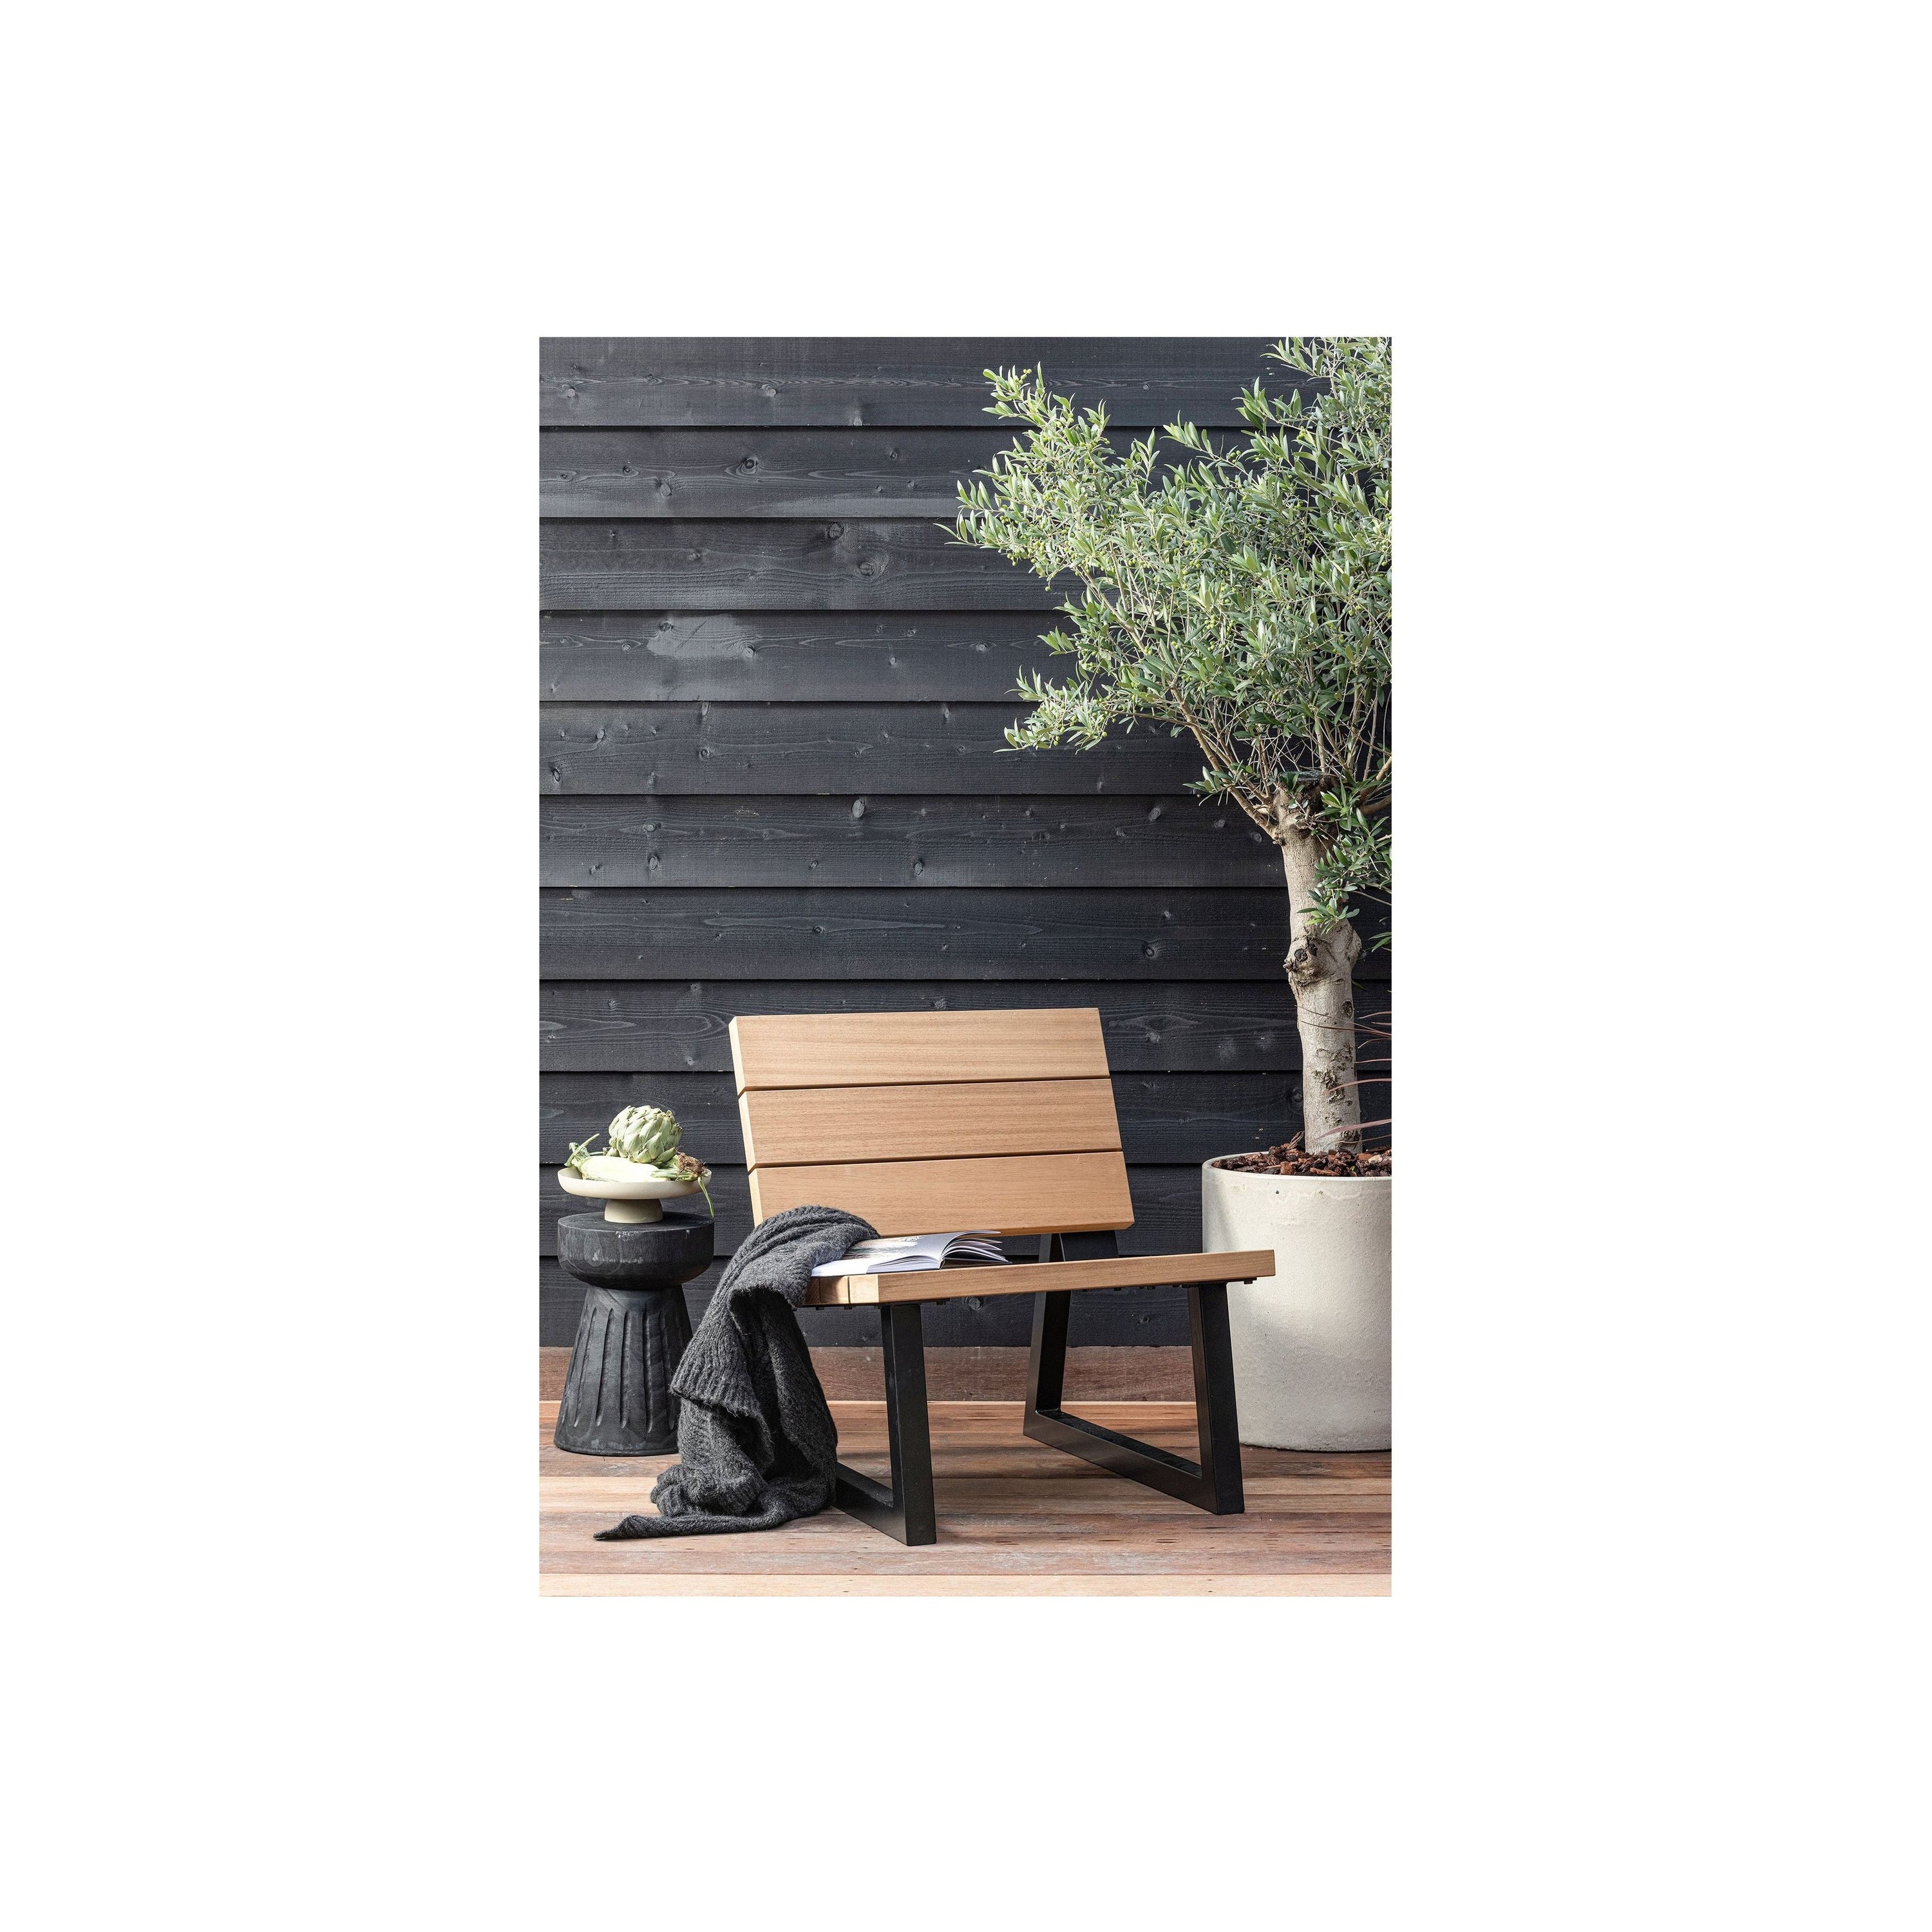 "BANCO" lauko kėdė, natūrali spalva, medis/metalas